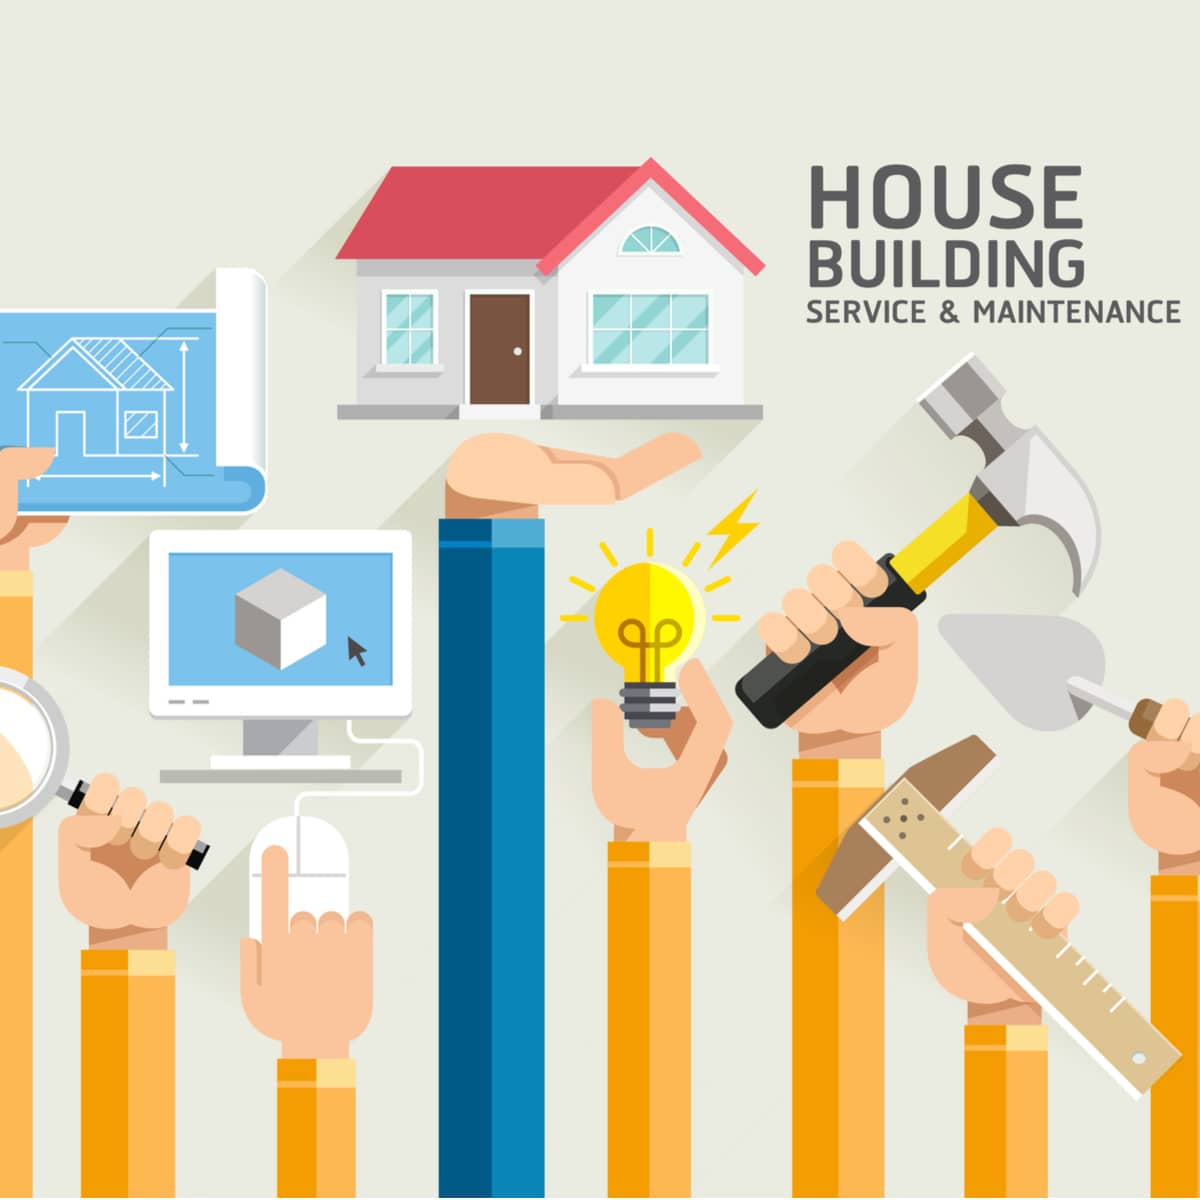 House Building Service & Maintenance